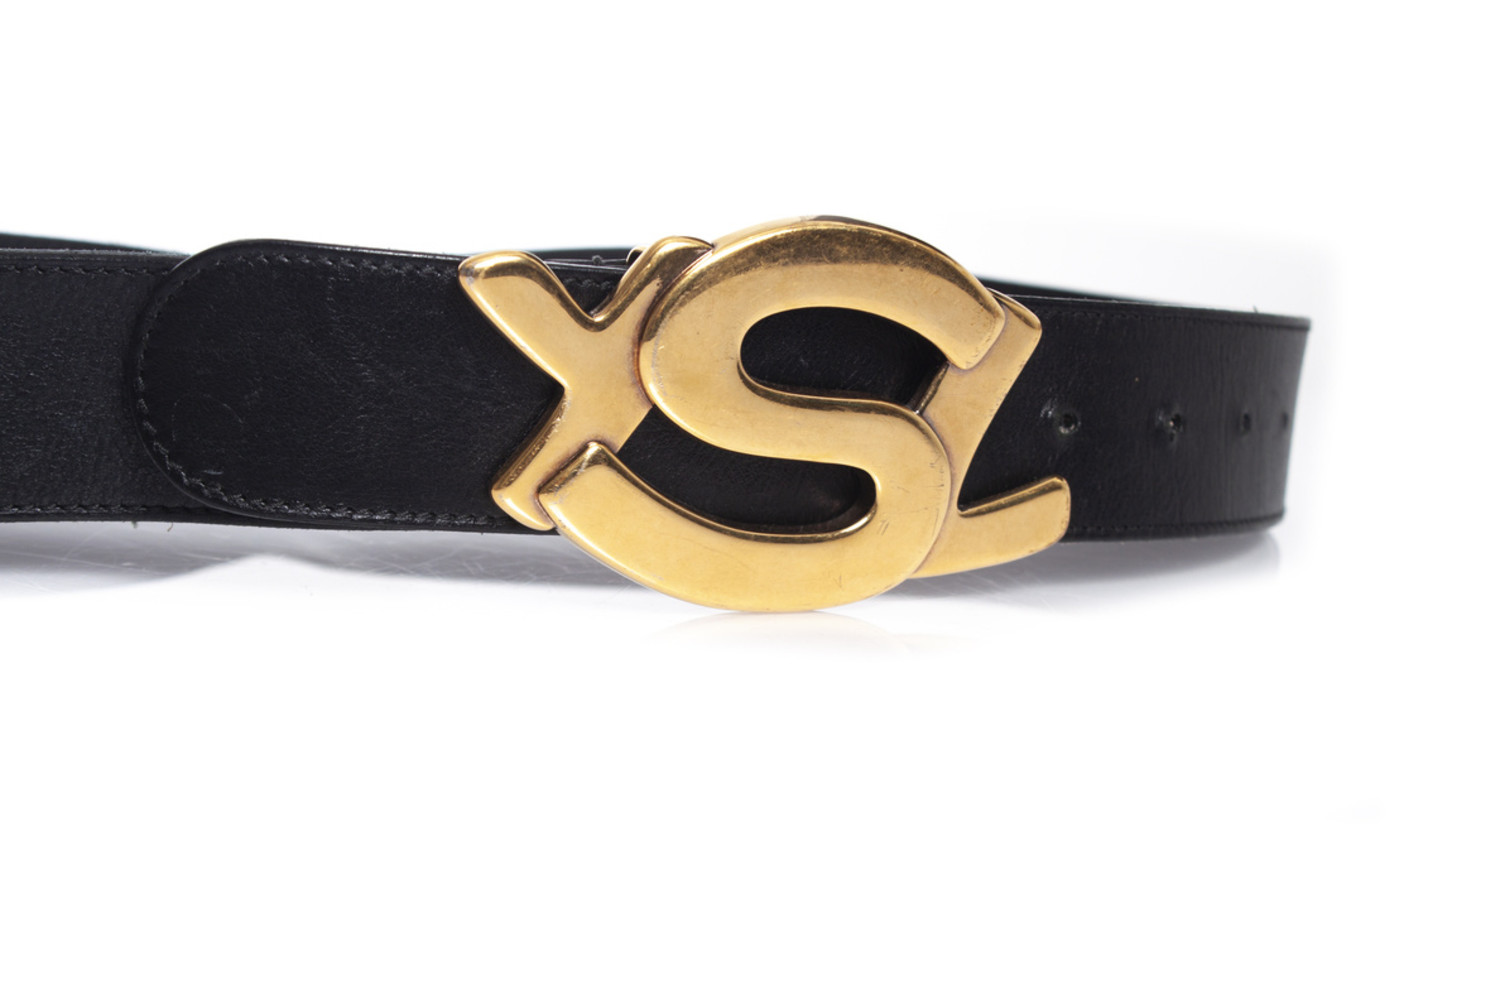 Yves Saint Laurent Yves Saint Laurent, YSL buckle belt in gold